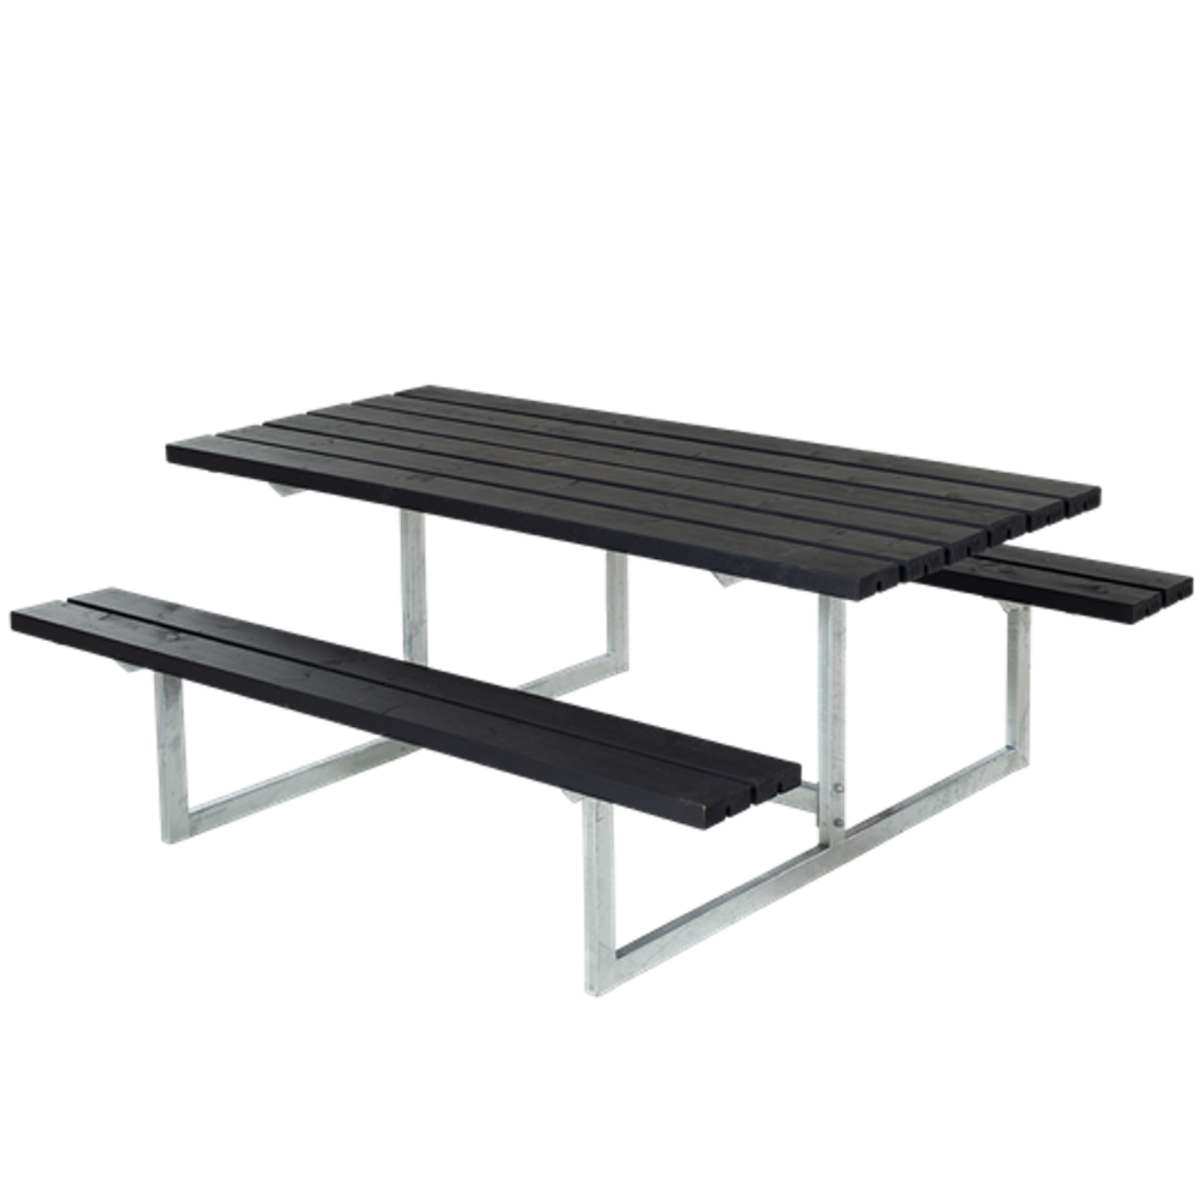 Picknicktisch, Gartentisch, Gartenmöbel  BASIC - 177cm - Stahl und Holz – Schwarz gebeizt